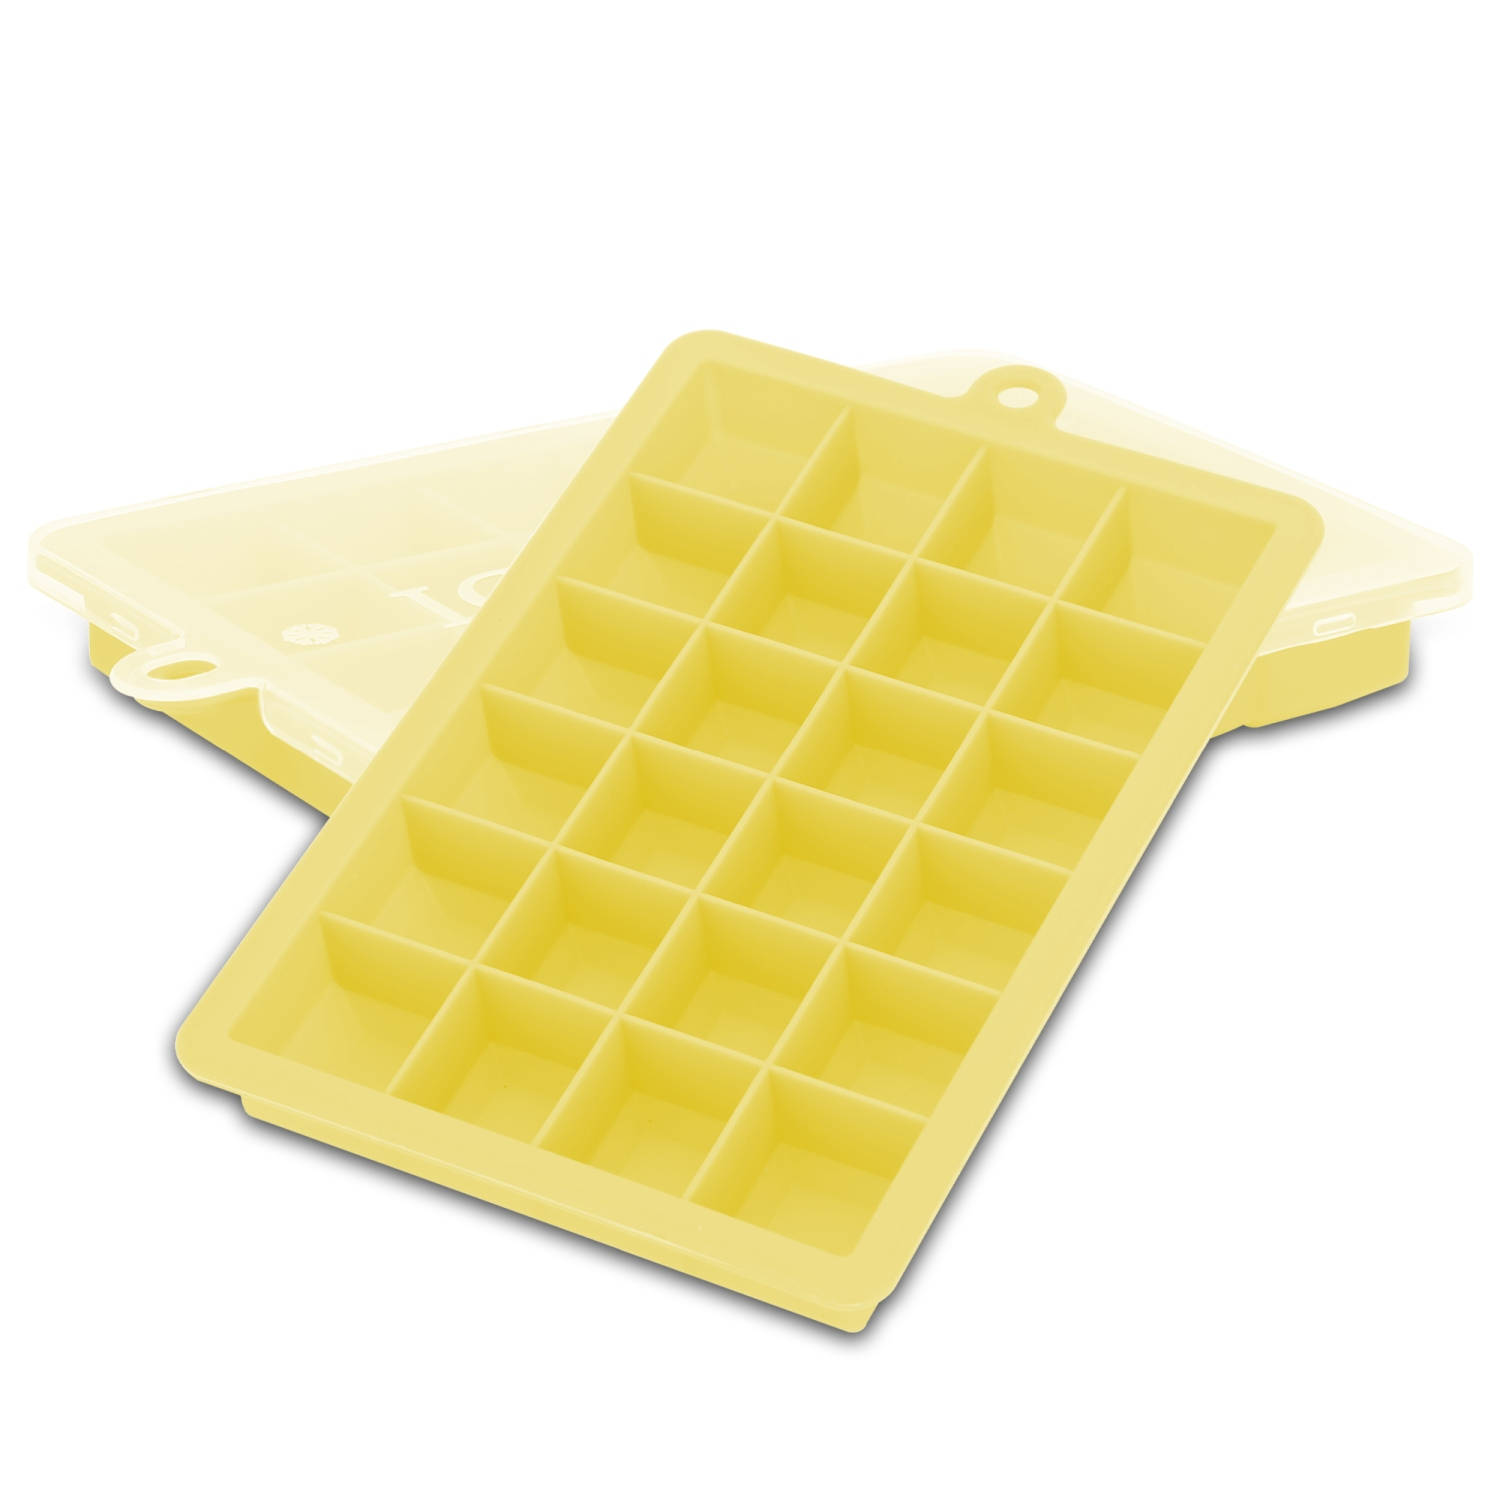 INTIRILIFE 2 x ijsblokjesvormen in geel, set van 2 à 24 vakken, ijsblokjesvormen met deksel, flexibele ijsblokjeshouder, afsluitbaar voor ijs, babyvoeding en meer